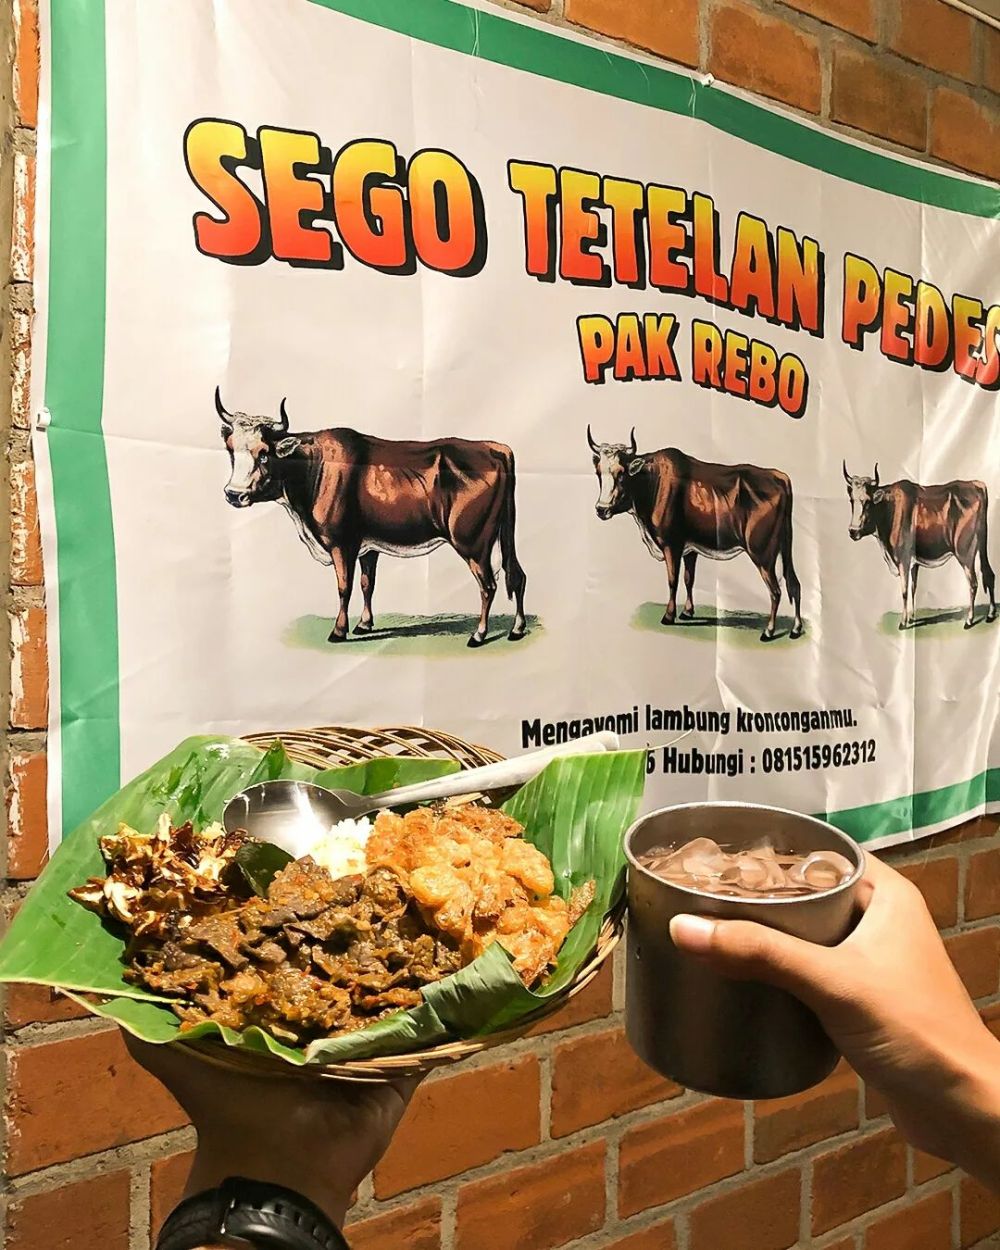 7 Rekomendasi Kuliner Pedas di Malang, Pedasnya Nampol